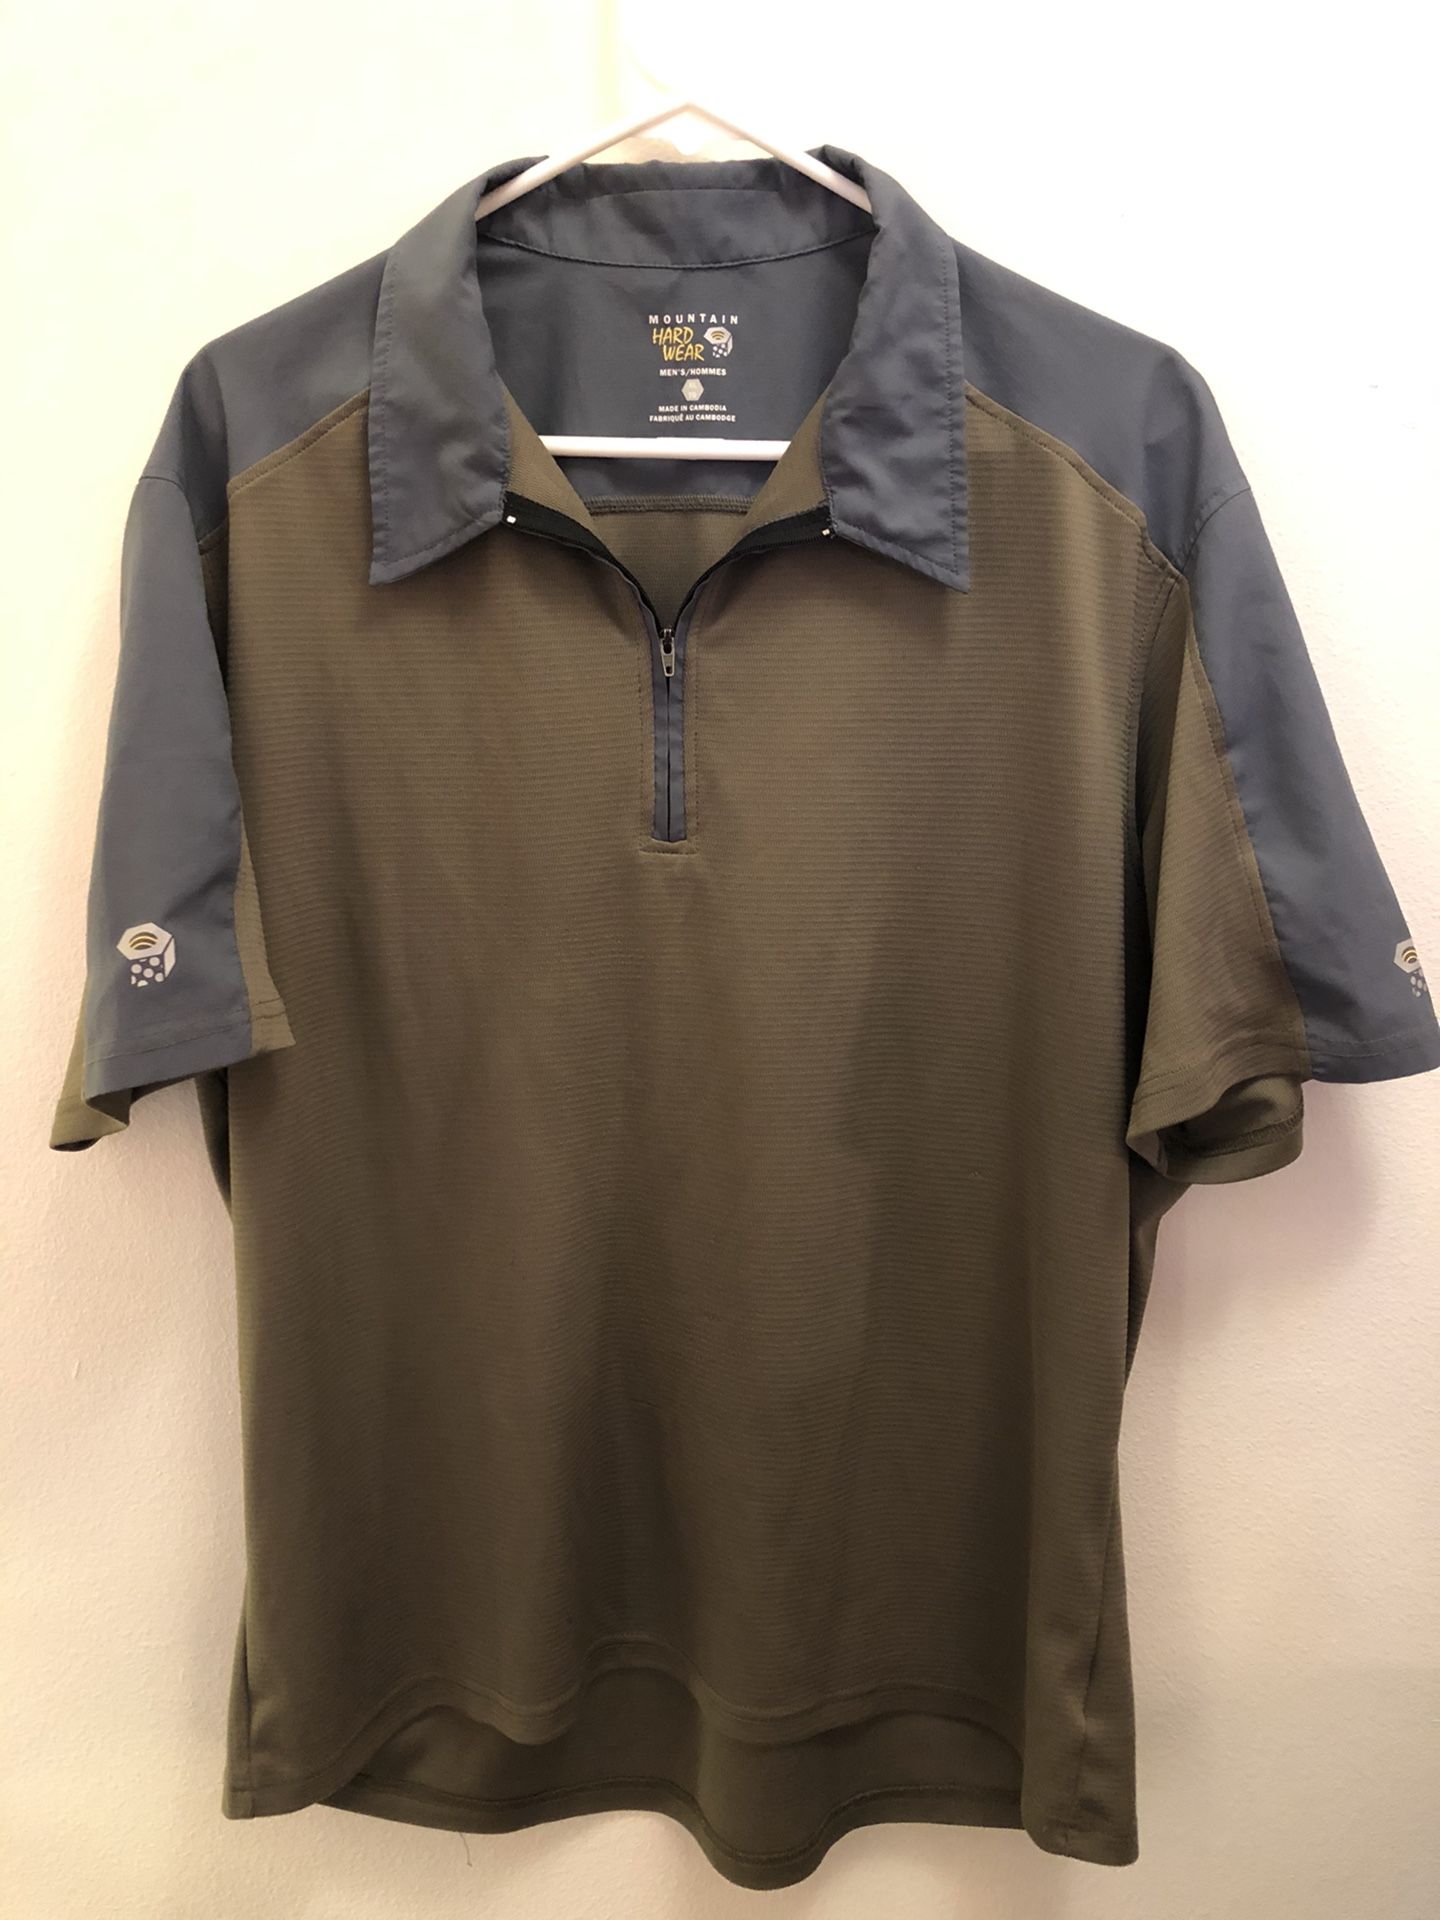 Mountain Hardwear Quarter Zip Polo Shirt Men's SZ XL Tan & Gray Hiking Causal